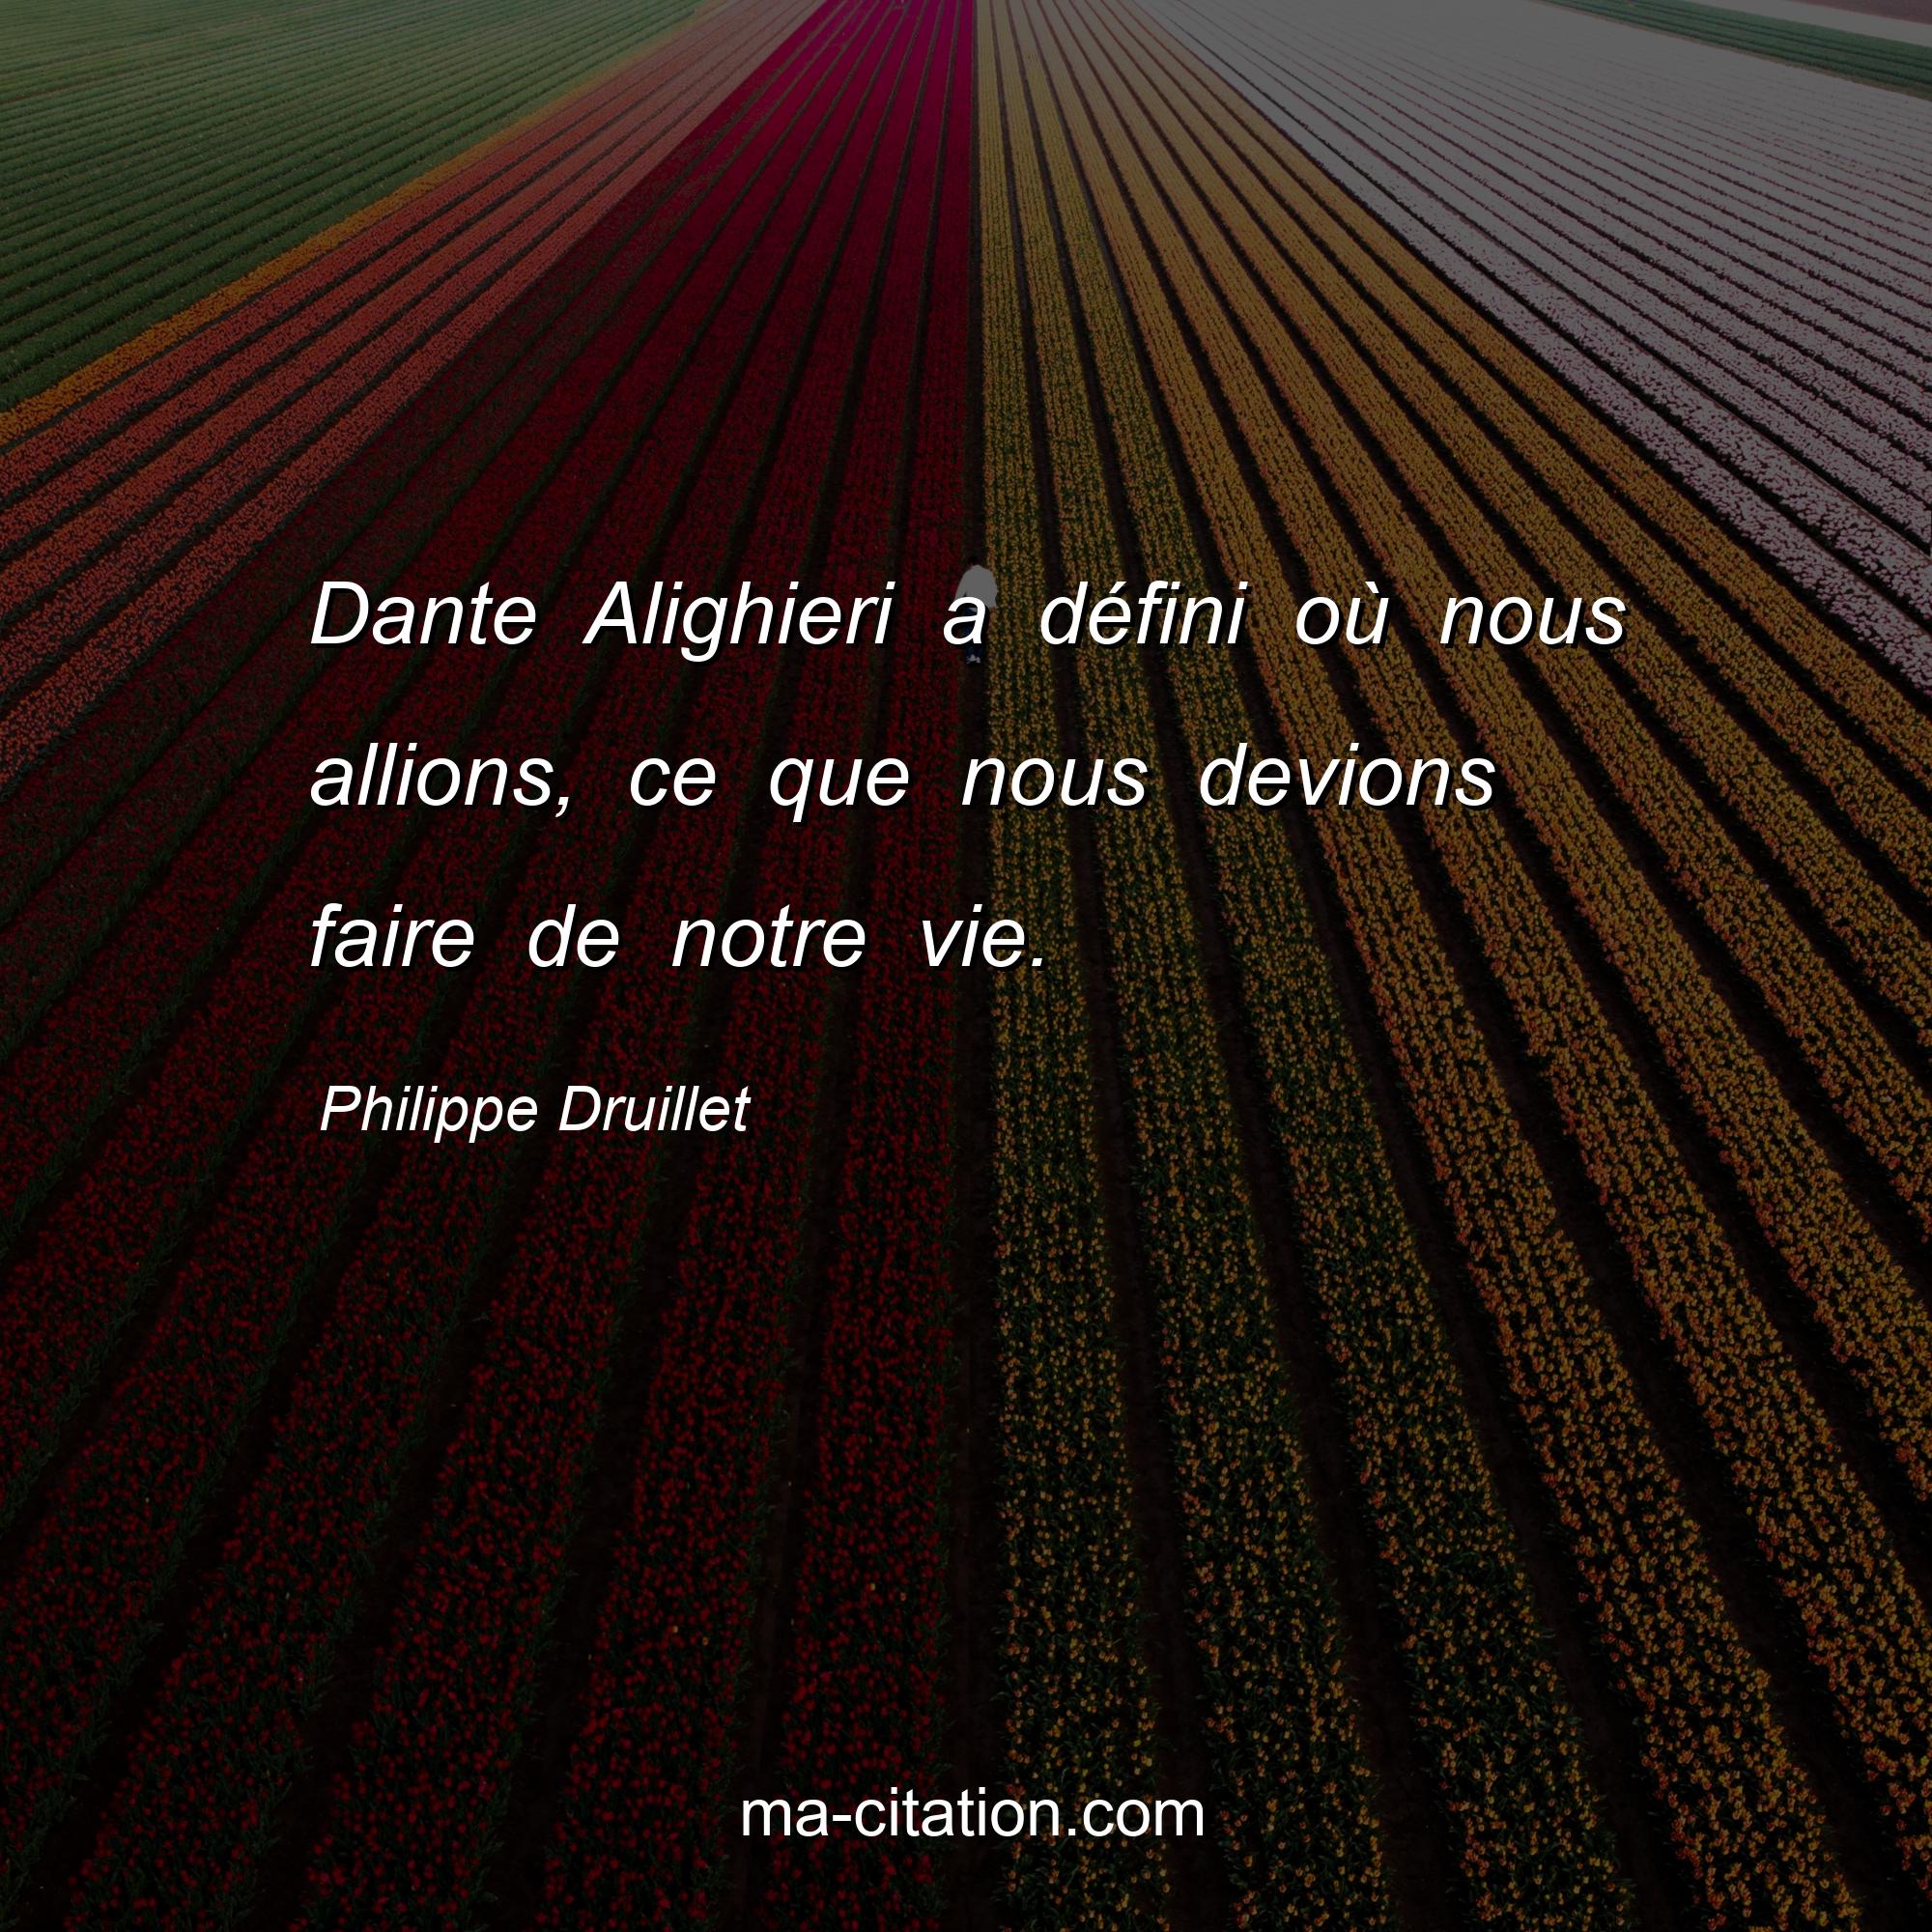 Philippe Druillet : Dante Alighieri a défini où nous allions, ce que nous devions faire de notre vie.